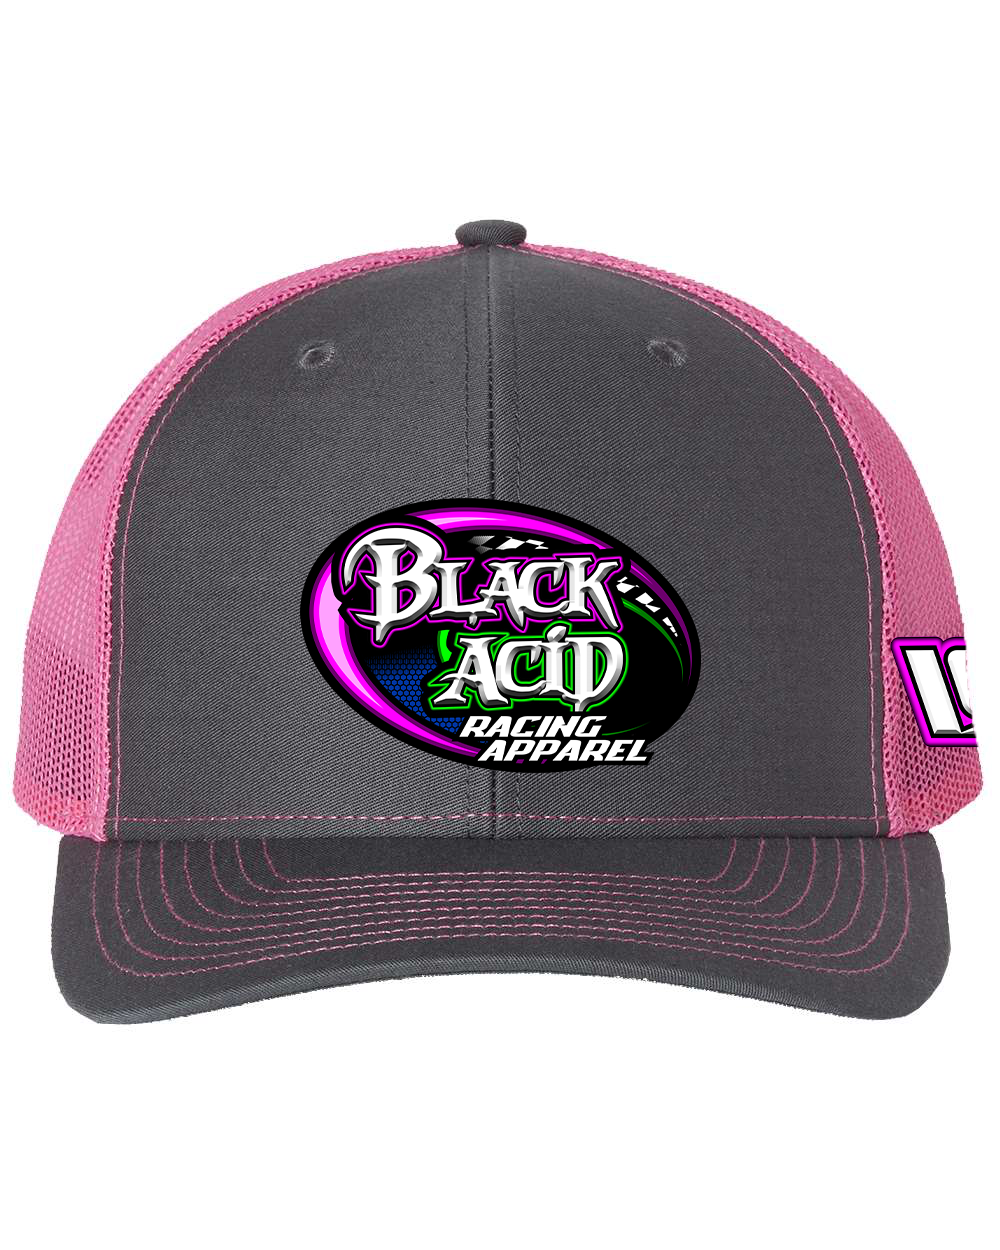 Black Acid Racing Apparel Hats